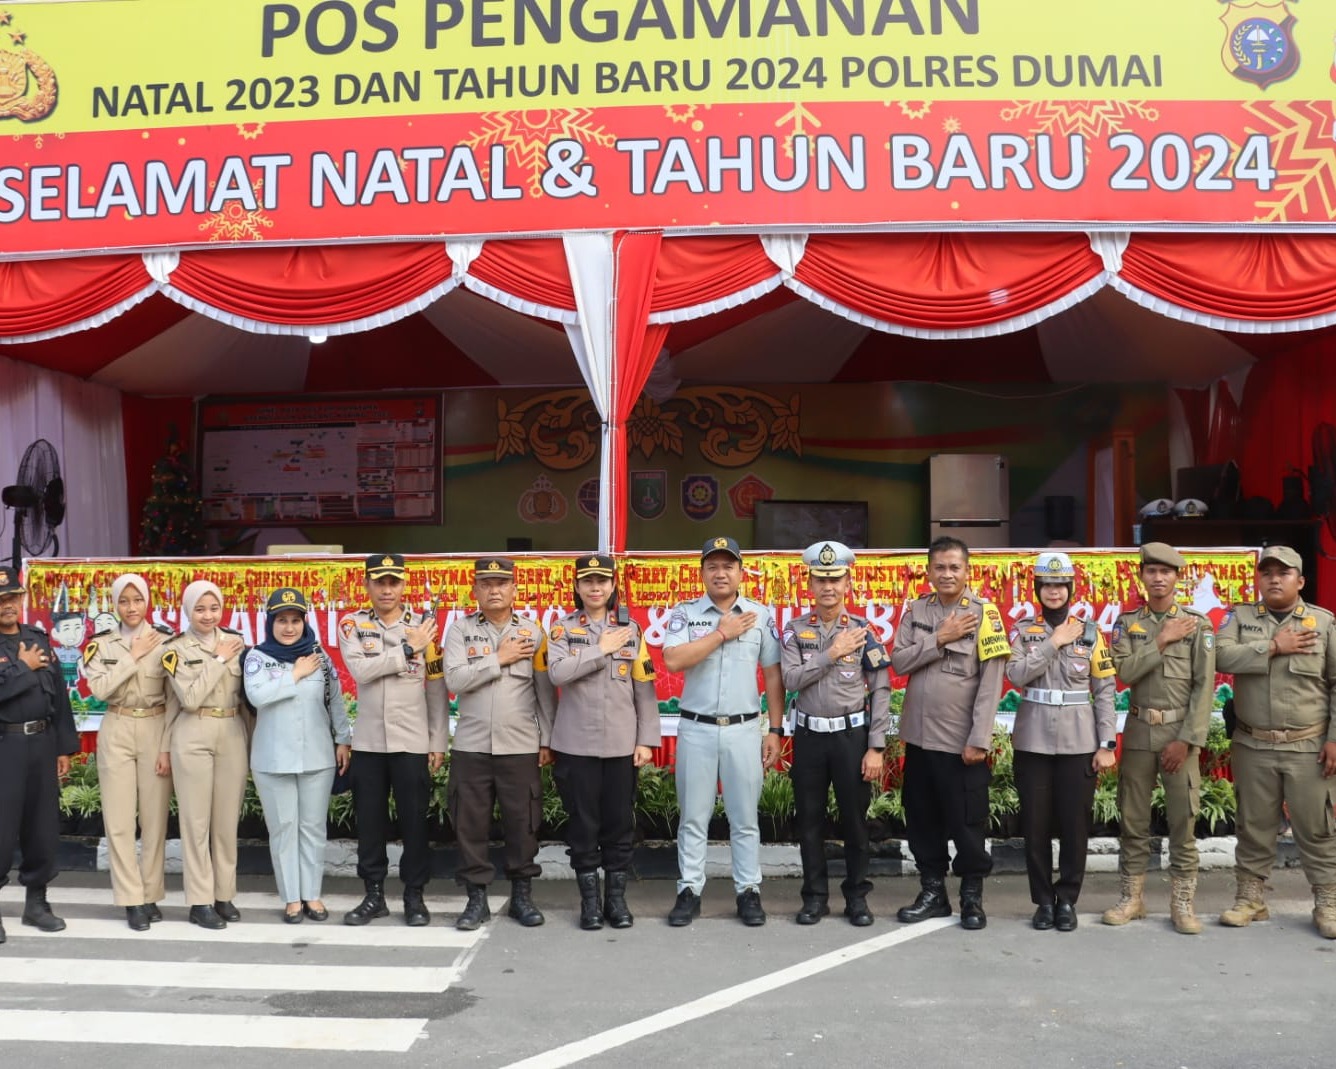 Polres Dumai Terima Kunjungan Tim Supervisi Ops Lilin Lancang Kuning 2023 Dalam Rangka Pengamanan Nataru